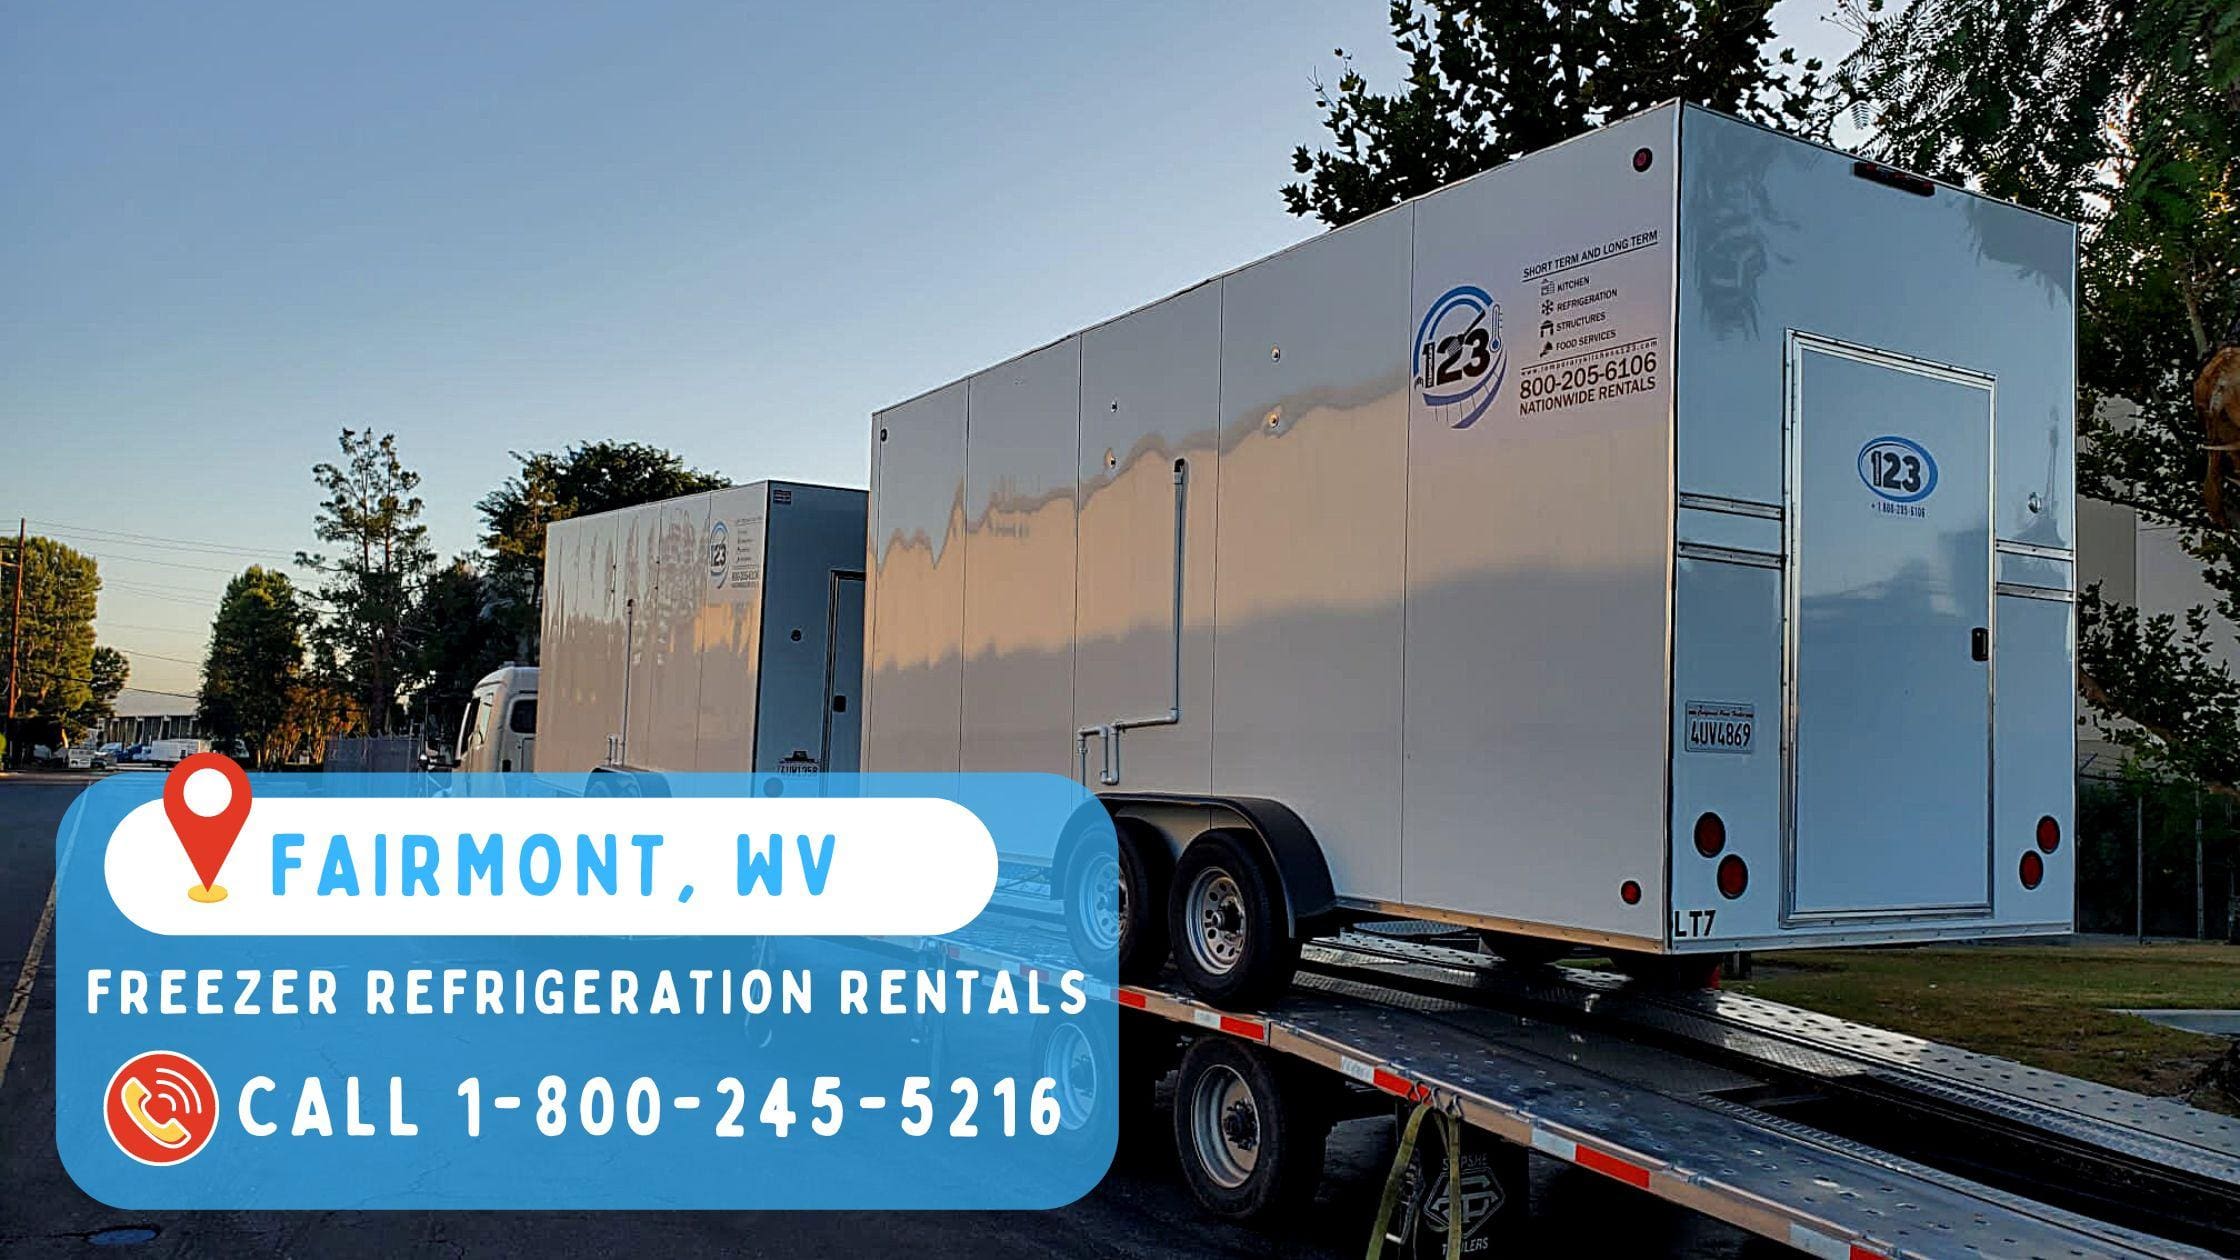 Freezer refrigeration rentals in Fairmont, WV